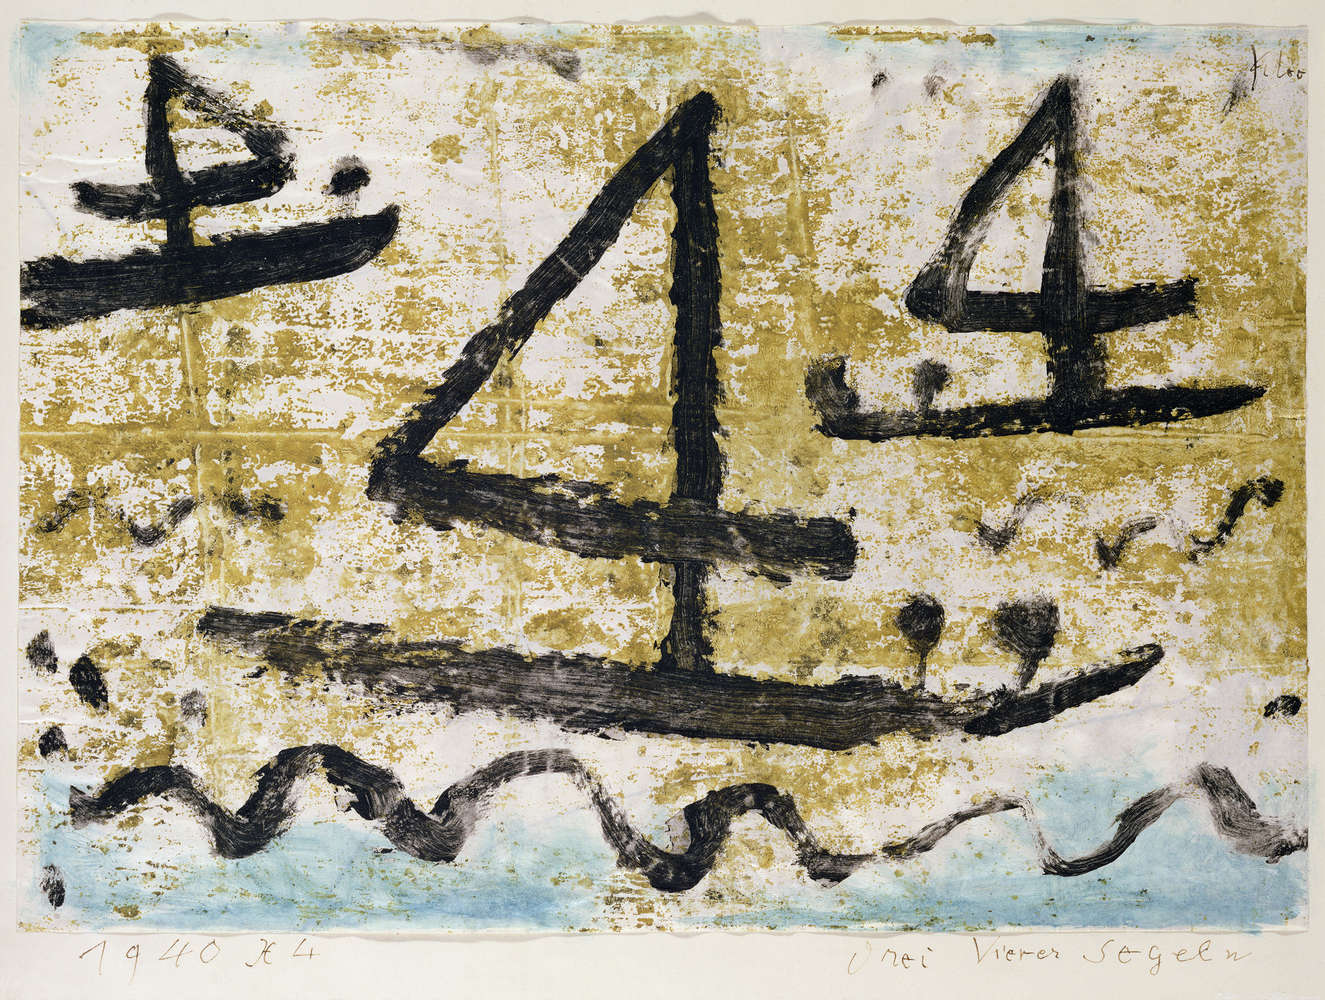             Fototapete "Segelschiffe" von Paul Klee
        